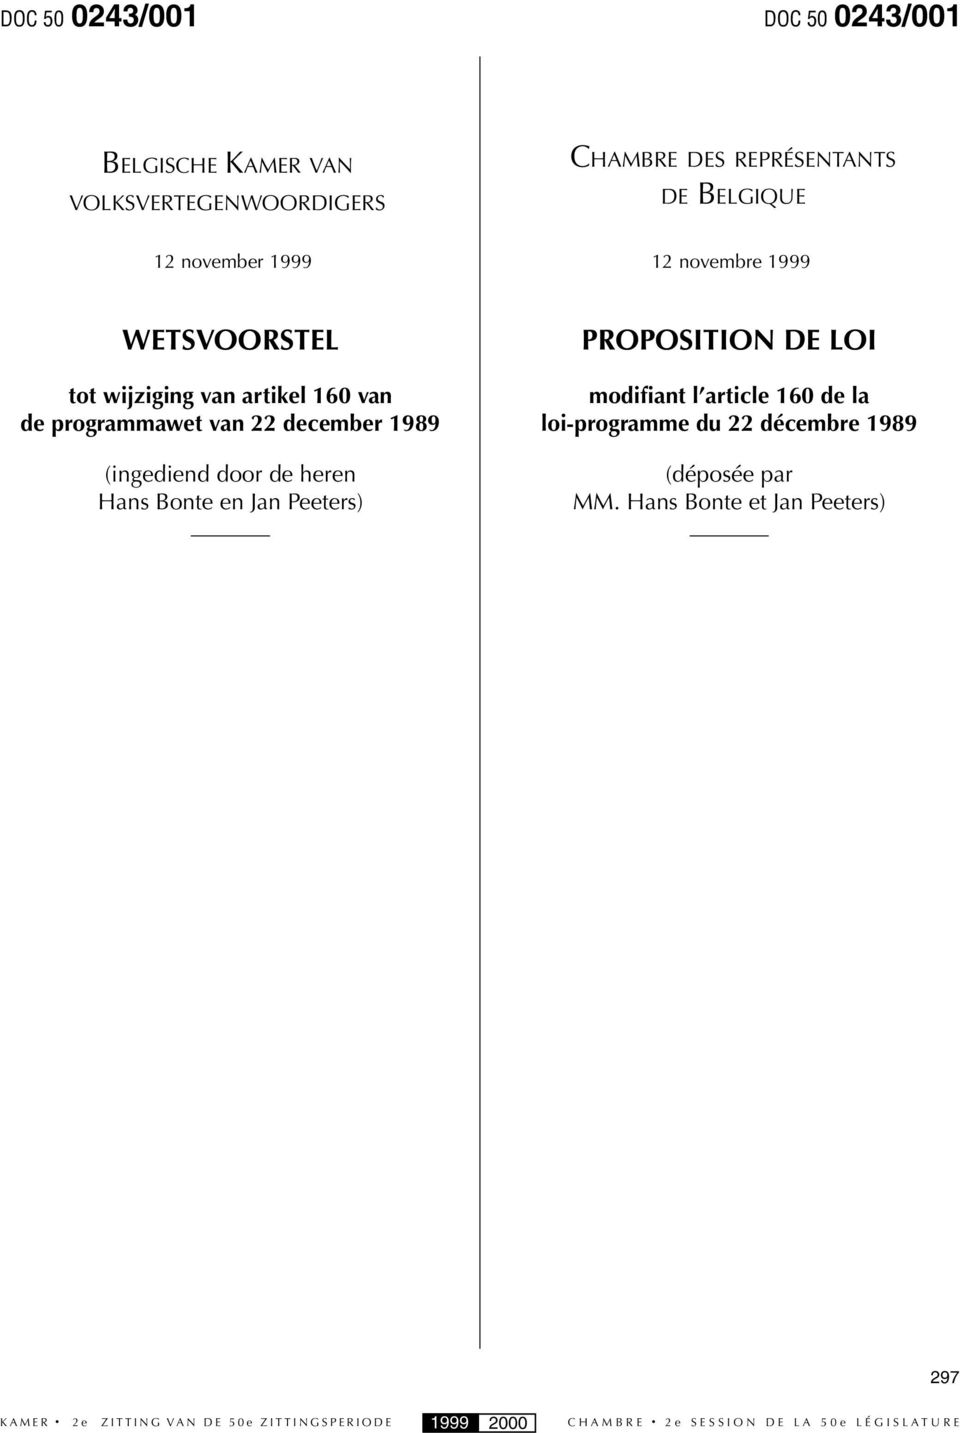 programmawet van 22 december 1989 (ingediend door de heren Hans Bonte en Jan Peeters) PROPOSITION DE